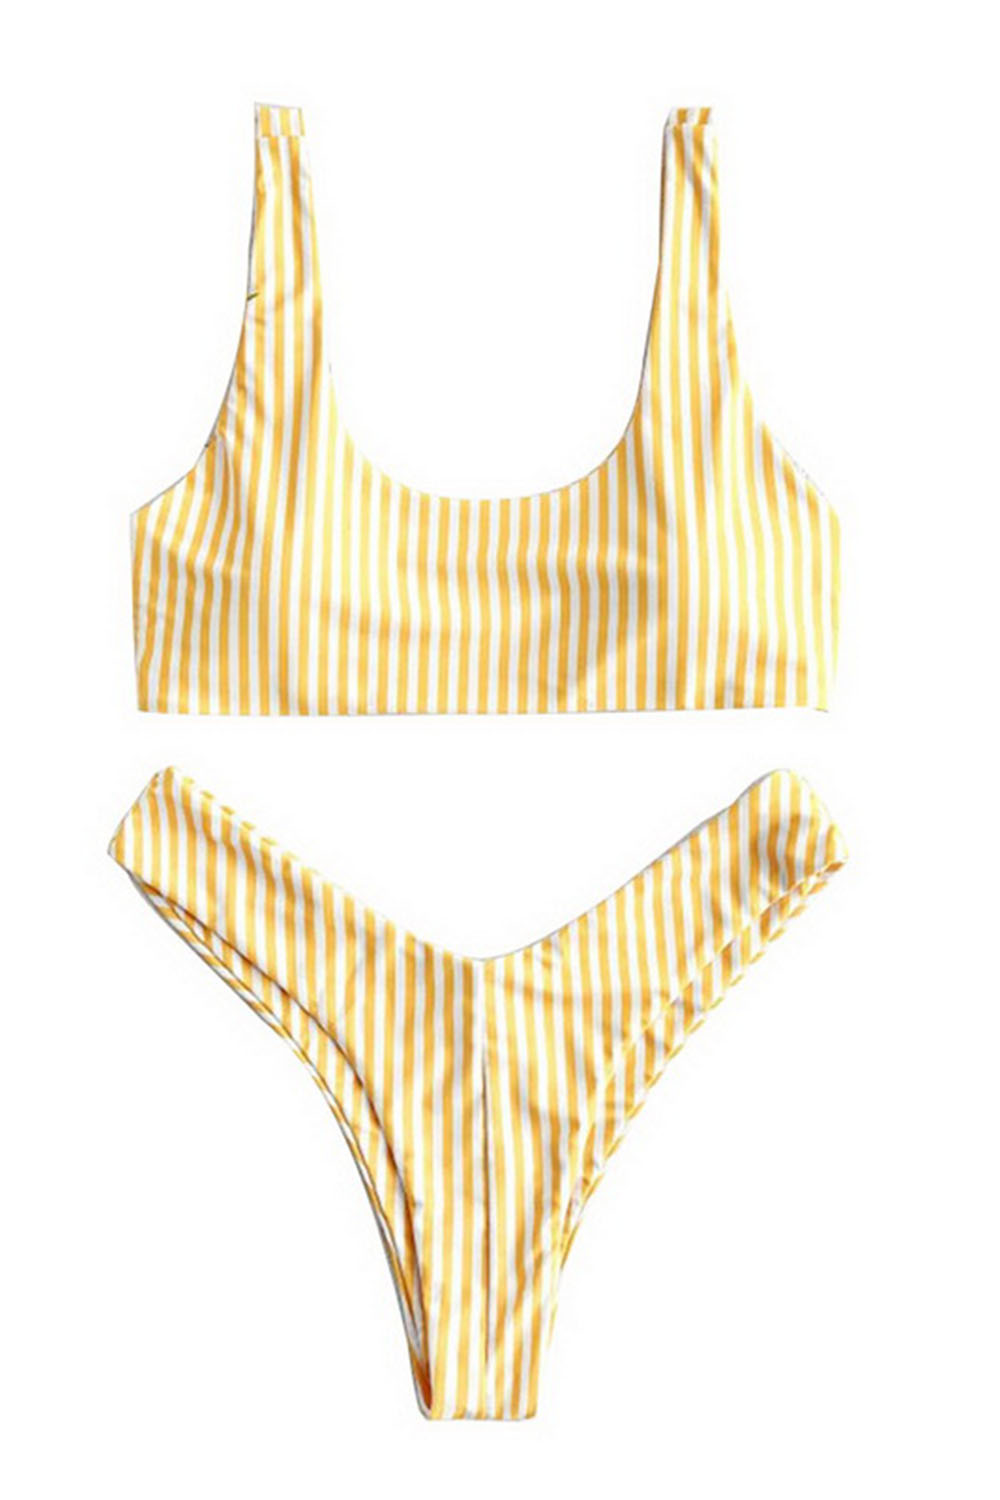 Hot Striped Bikini Set Brazilian Thong Sexy Swimwear